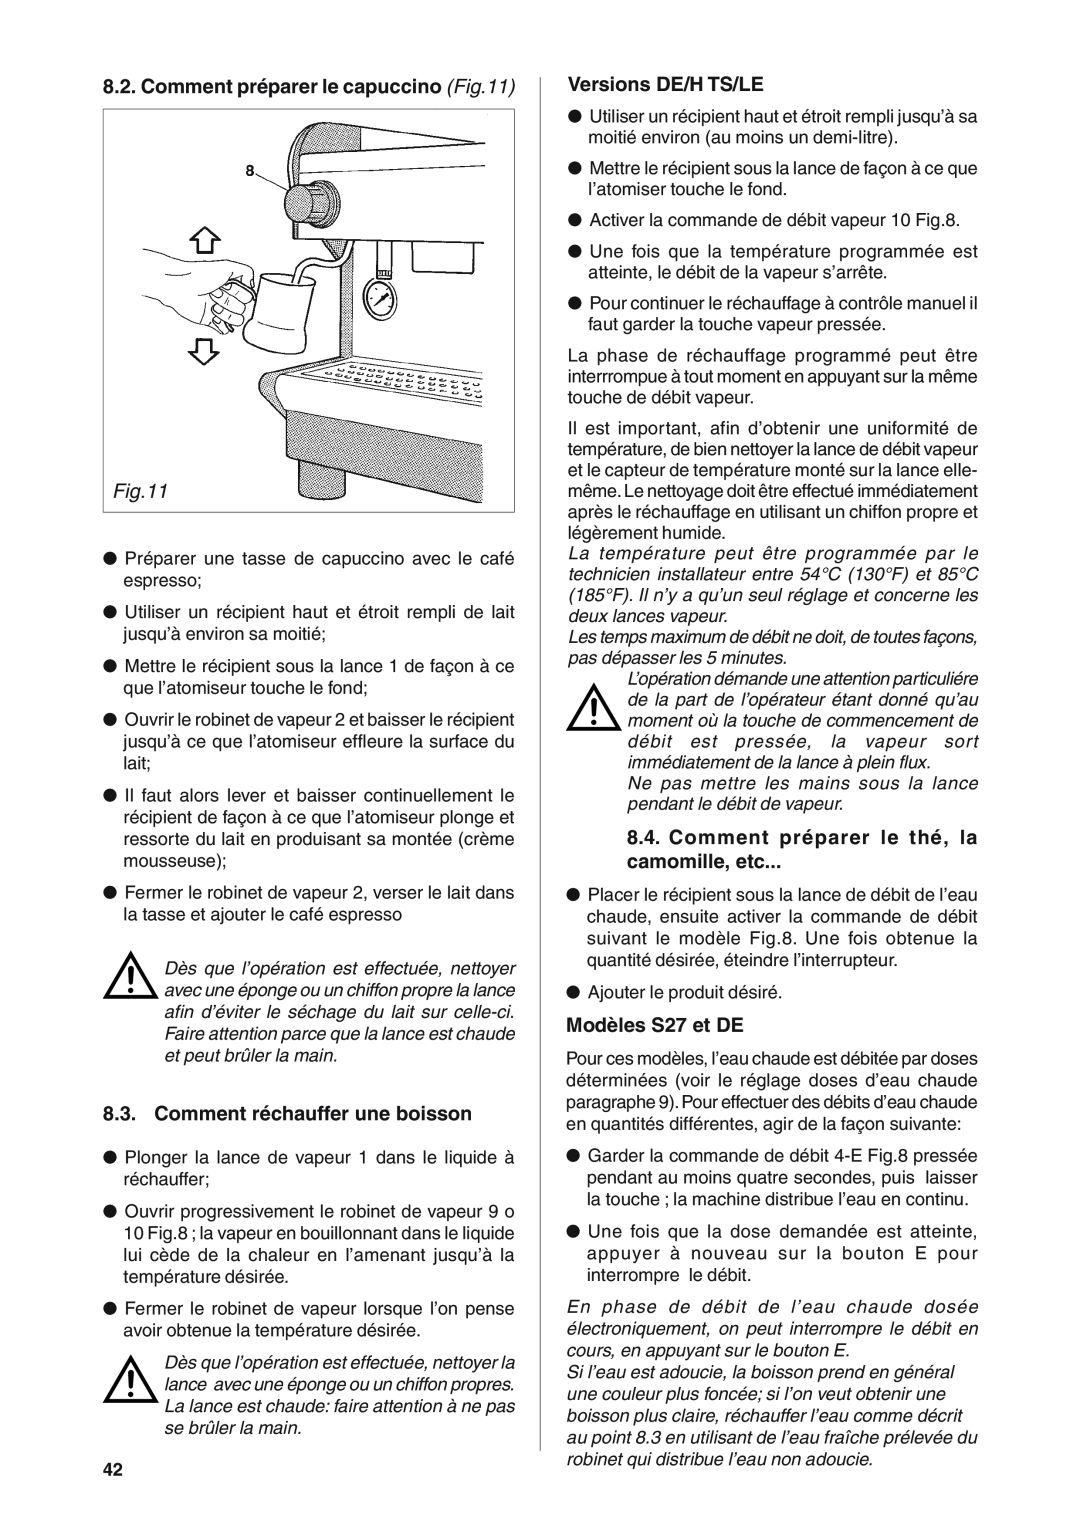 Rancilio S20 manual Comment préparer le capuccino, Comment réchauffer une boisson, Versions DE/H TS/LE, Modèles S27 et DE 